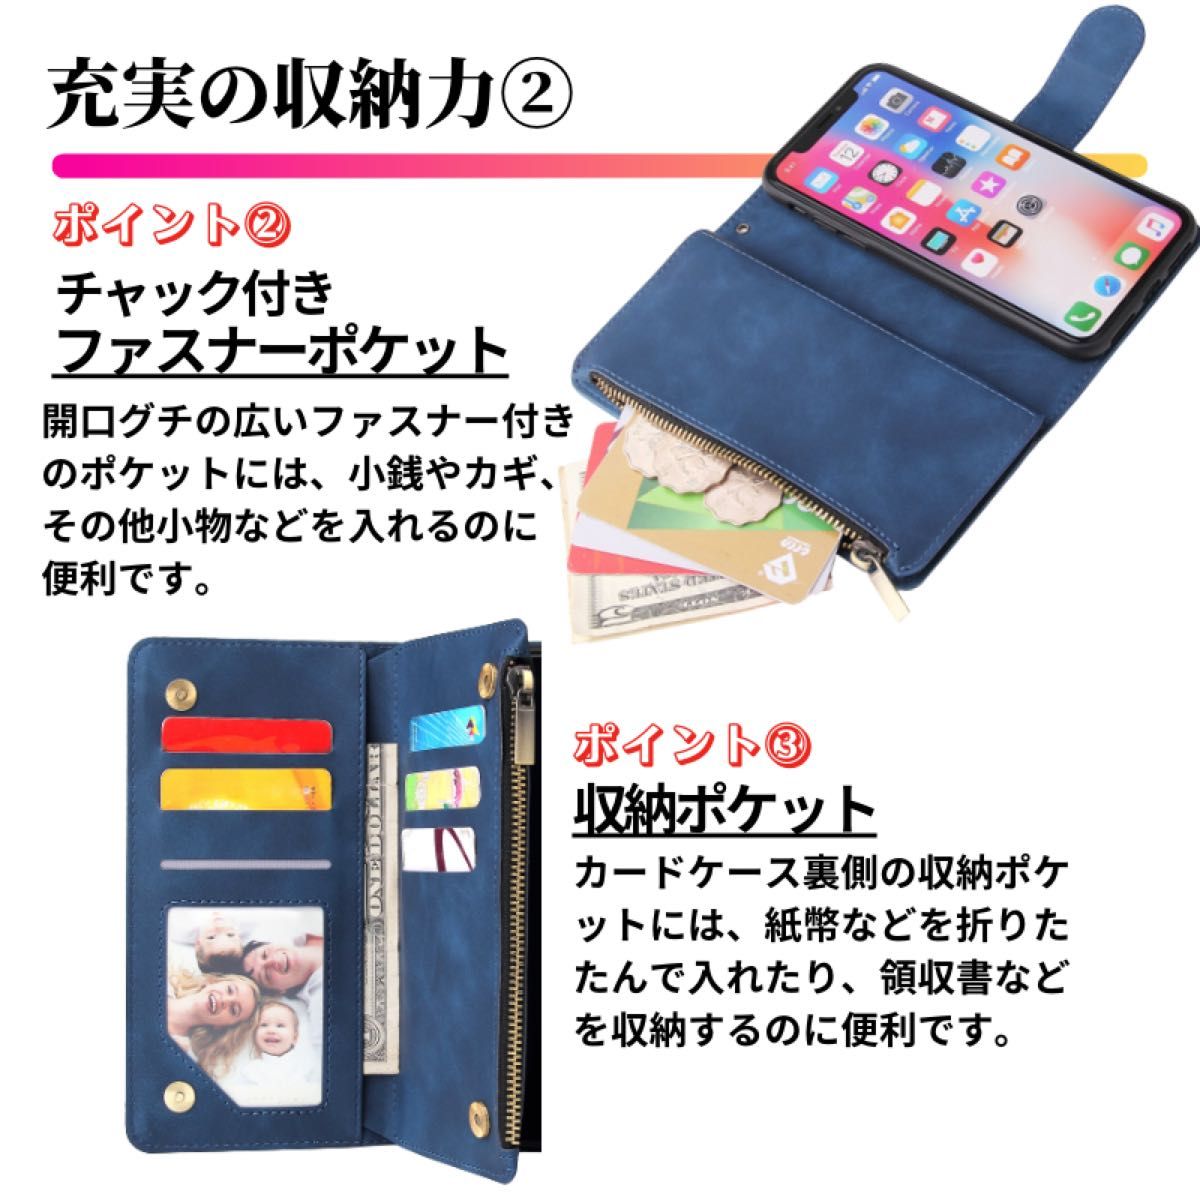 iPhone XSMax ケース 手帳型 お財布 レザー カードケース ジップファスナー収納付 おしゃれ XS Max ブルー